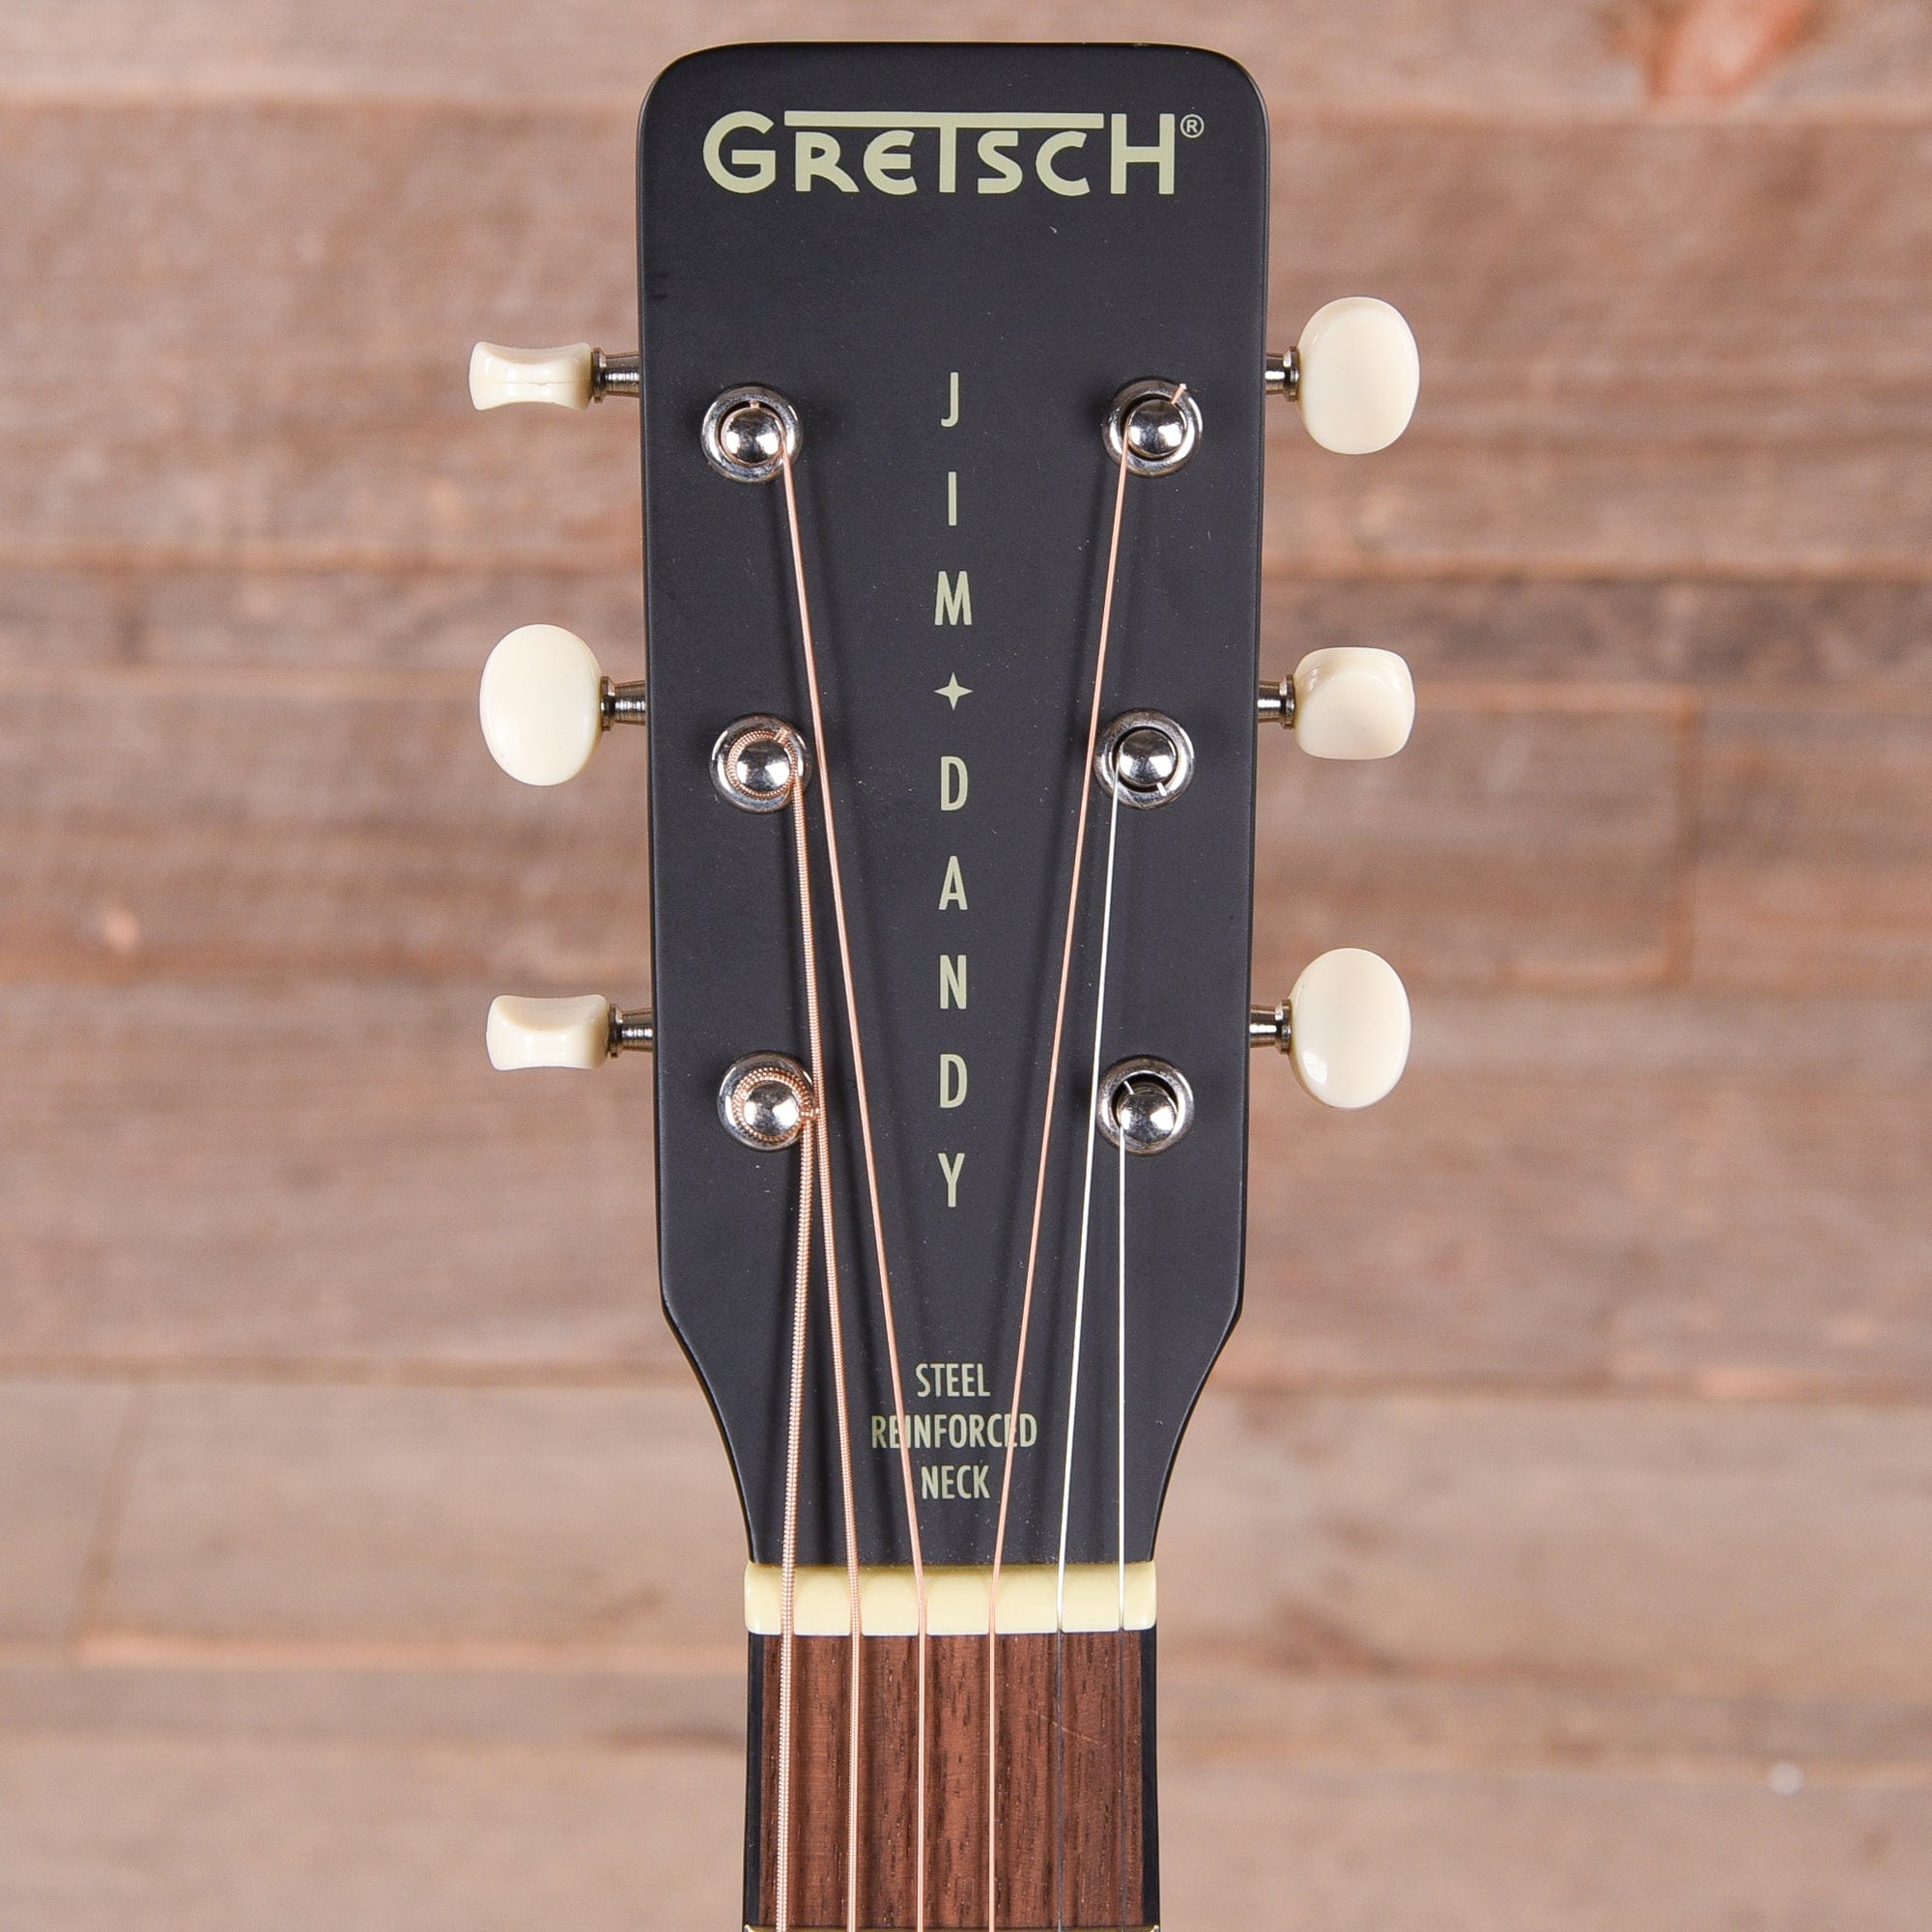 Gretsch Jim Dandy Flat Top Acoustic 2 Tone Sunburst Acoustic Guitars / Parlor